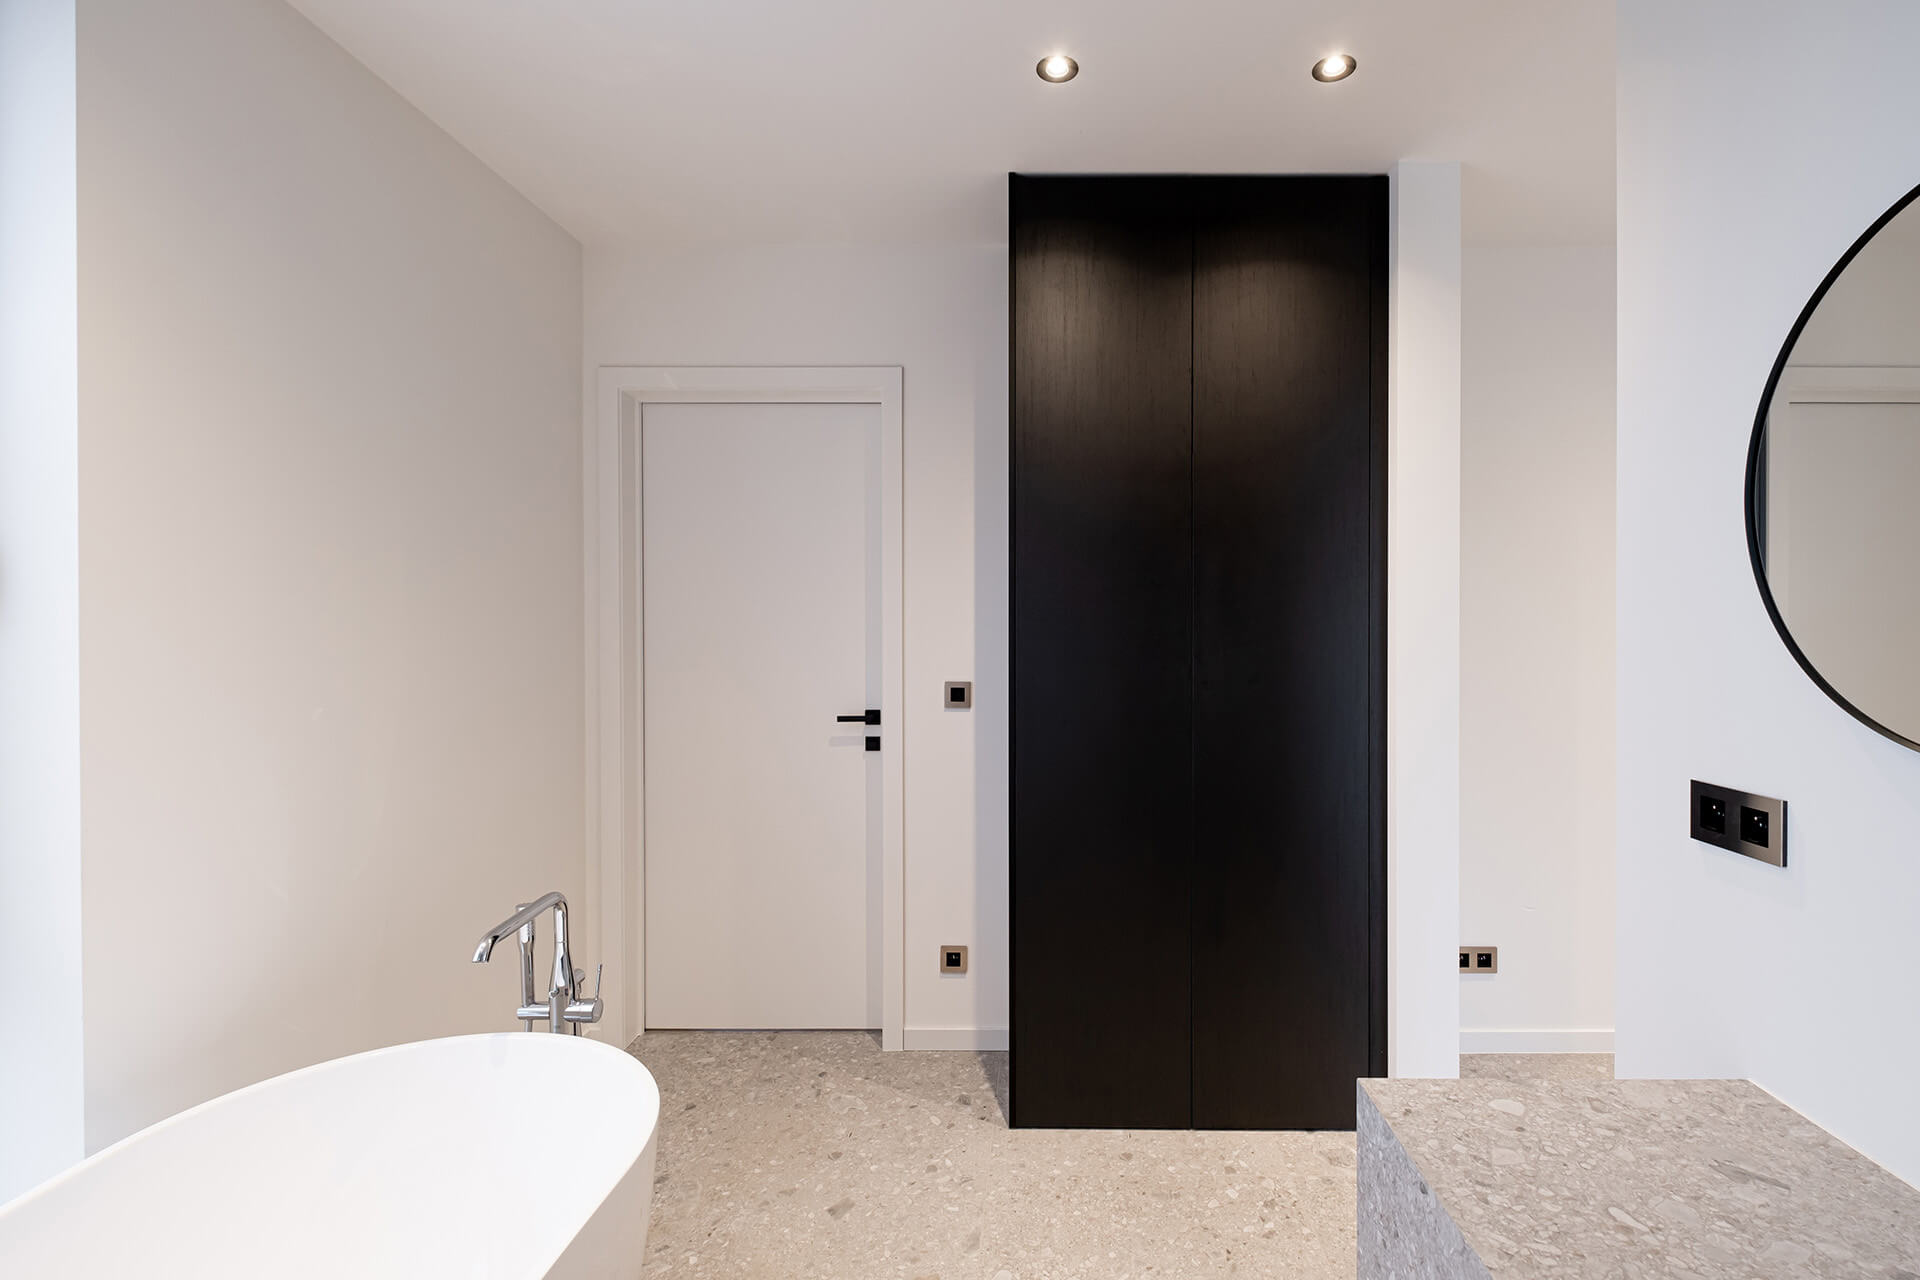 Black bespoke bathroom cabinet in Elegant Black, from maatkastenonline